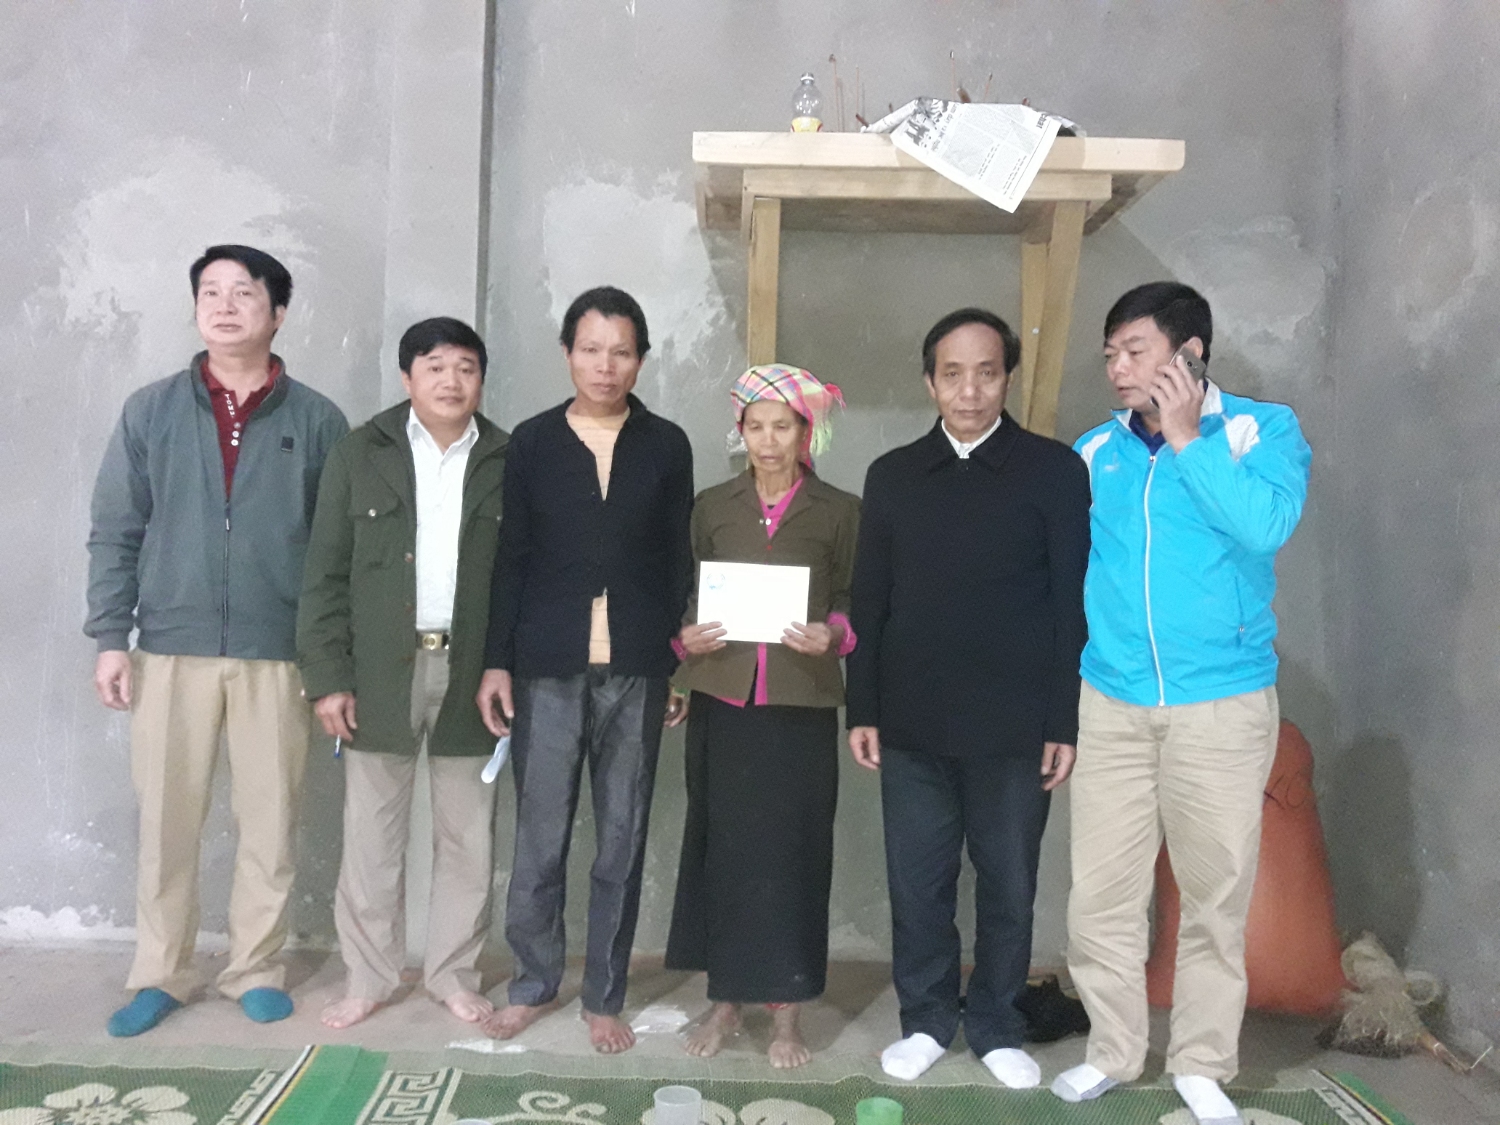 Đồng chí Đỗ Quốc Tuấn - Chủ tịch Liên đoàn Lao động huyện và đại diện cấp ủy, chính quyền xã Mường Khoa  trao tiền hỗ trợ cho bà Lành Thị Đỏm.